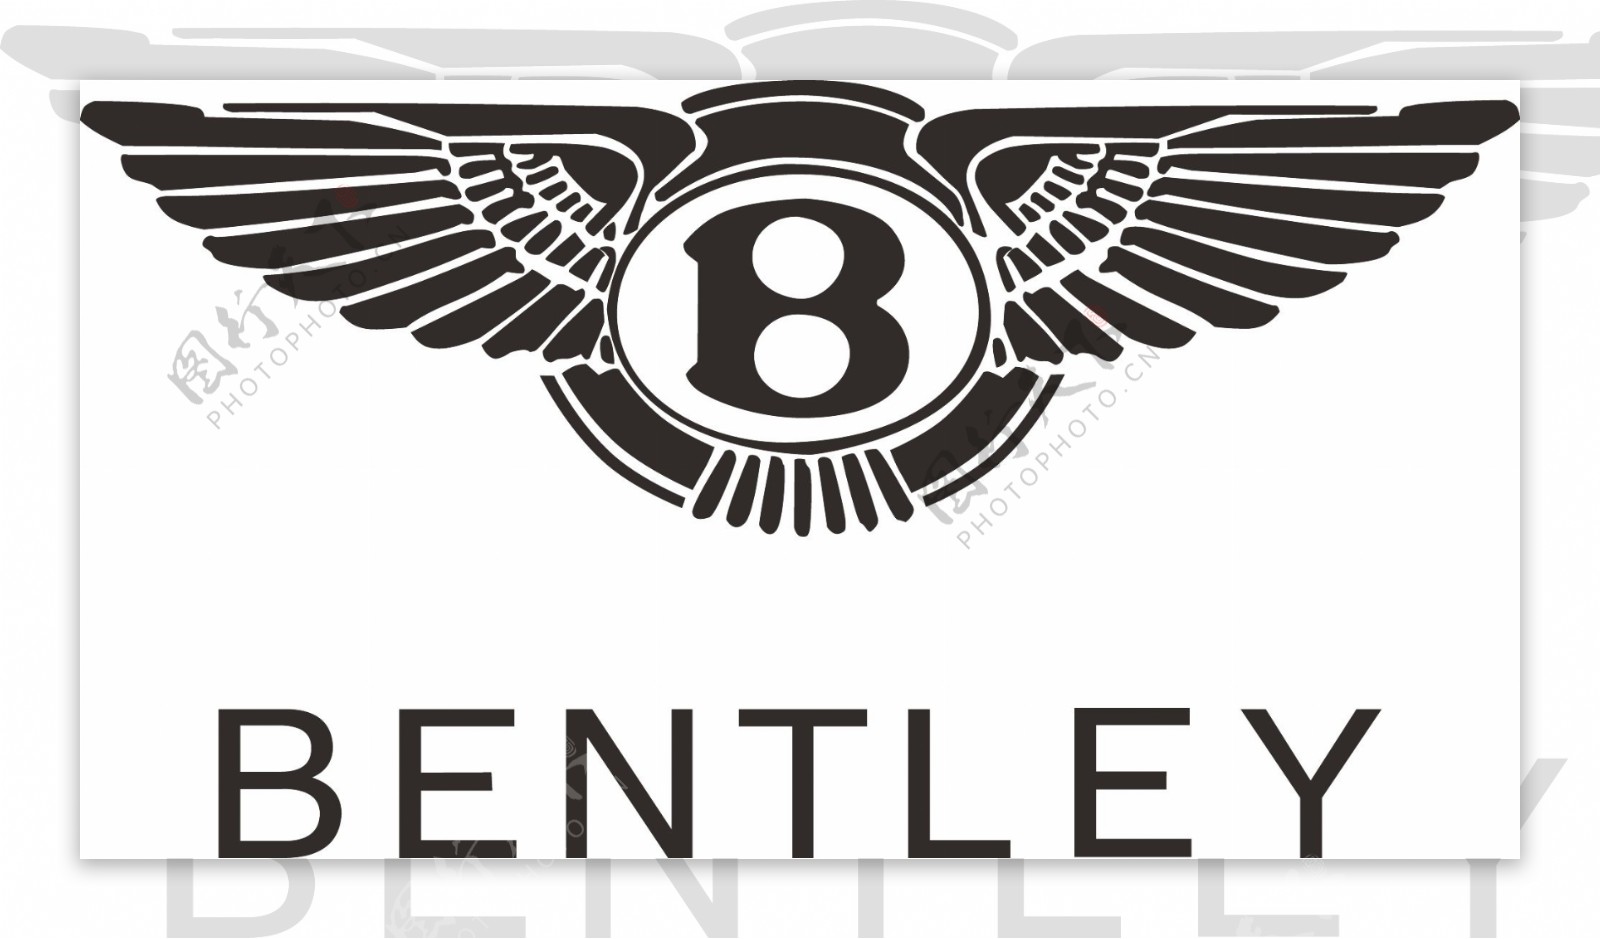 Bentley Logo Wallpapers - Top Free Bentley Logo Backgrounds ...